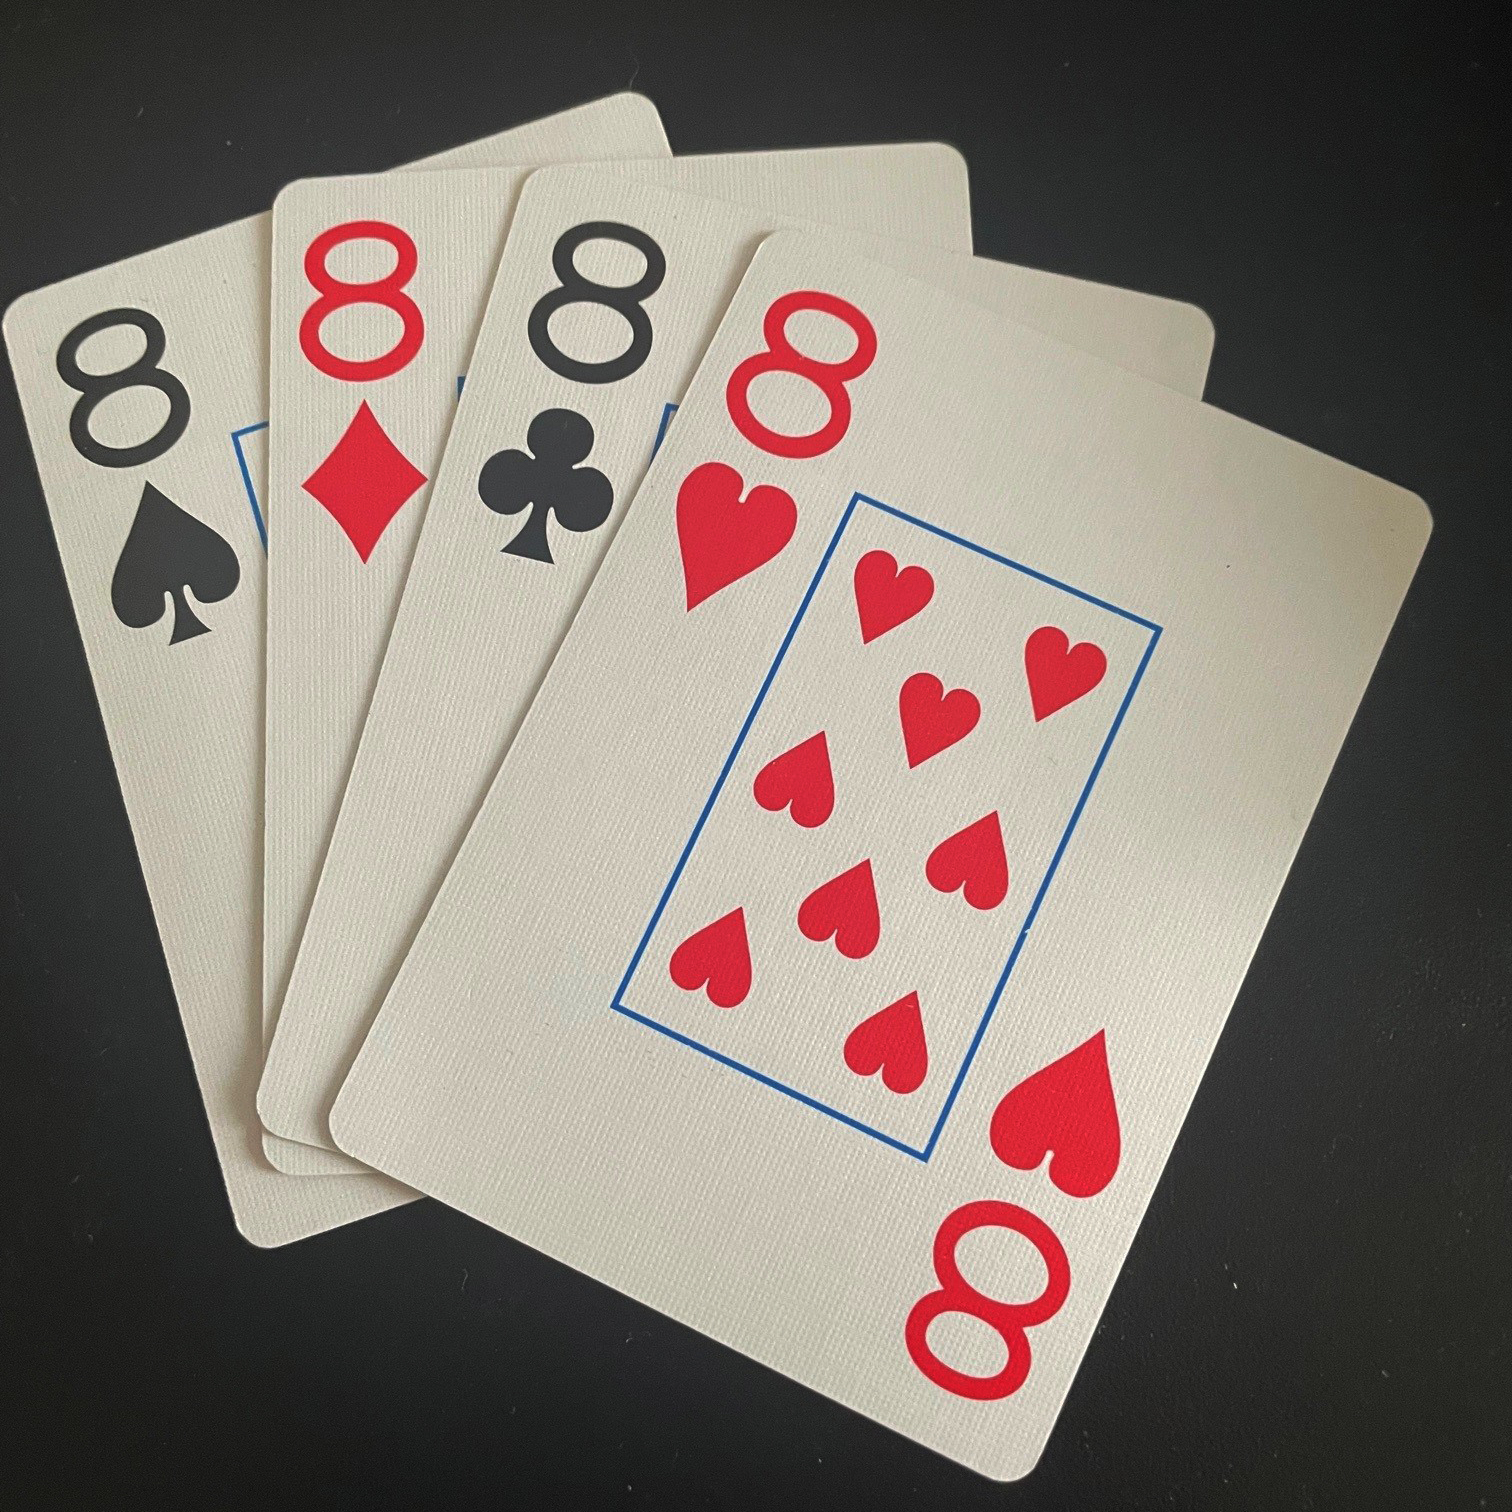 Les quatre 8 dans un jeu de cartes standard